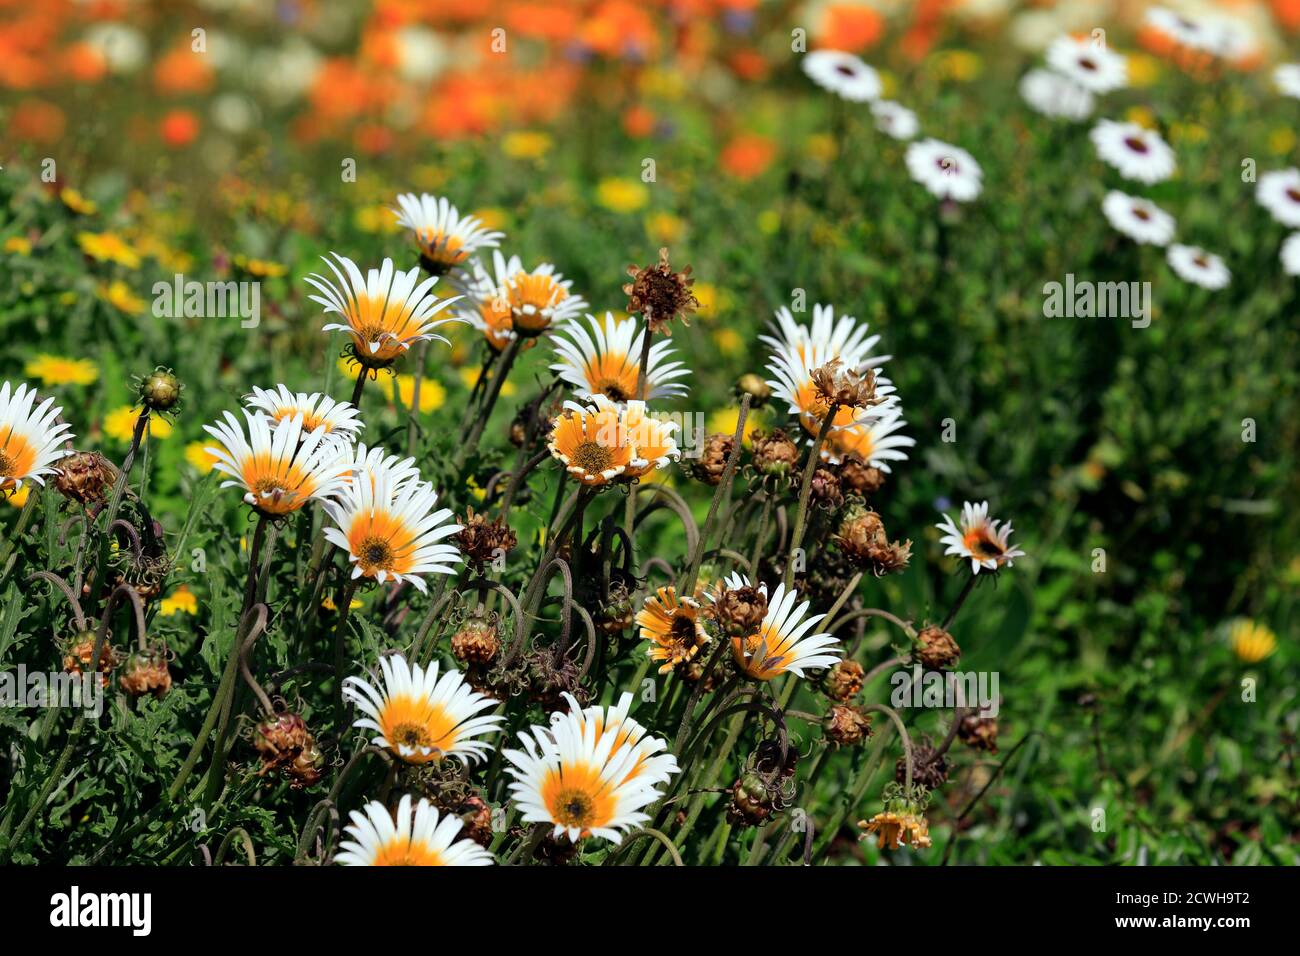 Le printemps fleurit dans les jardins botaniques nationaux de Kirstenbosch, au Cap, en Afrique du Sud. Banque D'Images